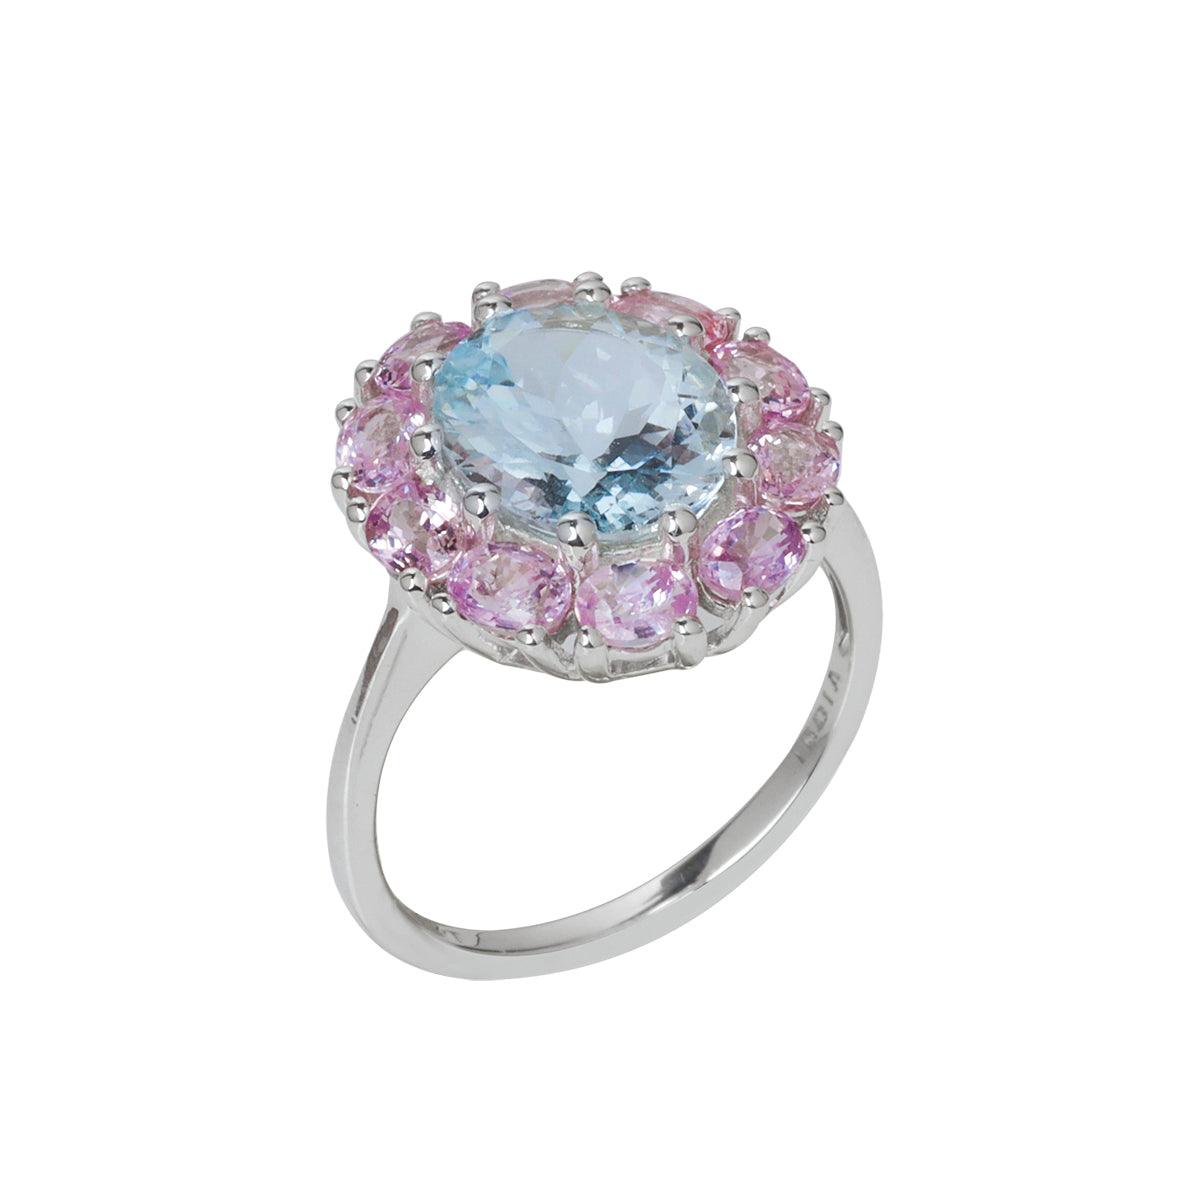 5.40 Ct. Aquamarine & Pink Sapphire Cluster Ring 14K White Gold Jewelry - YoTreasure